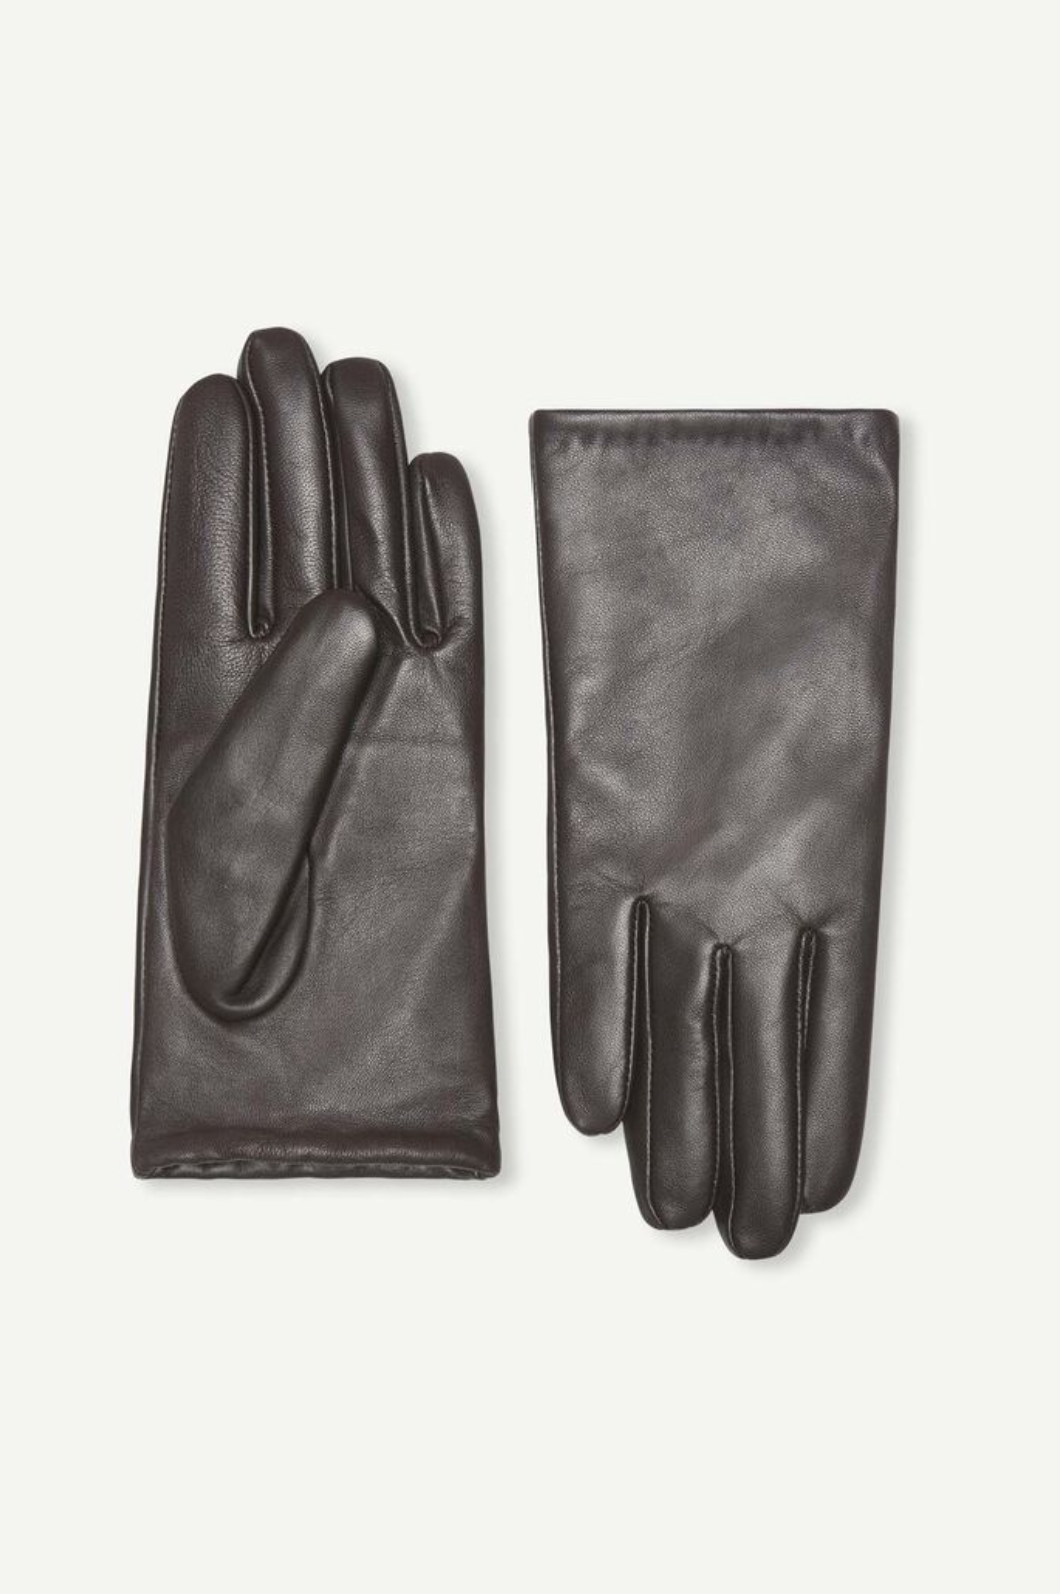 SAMSOE Polette Gloves